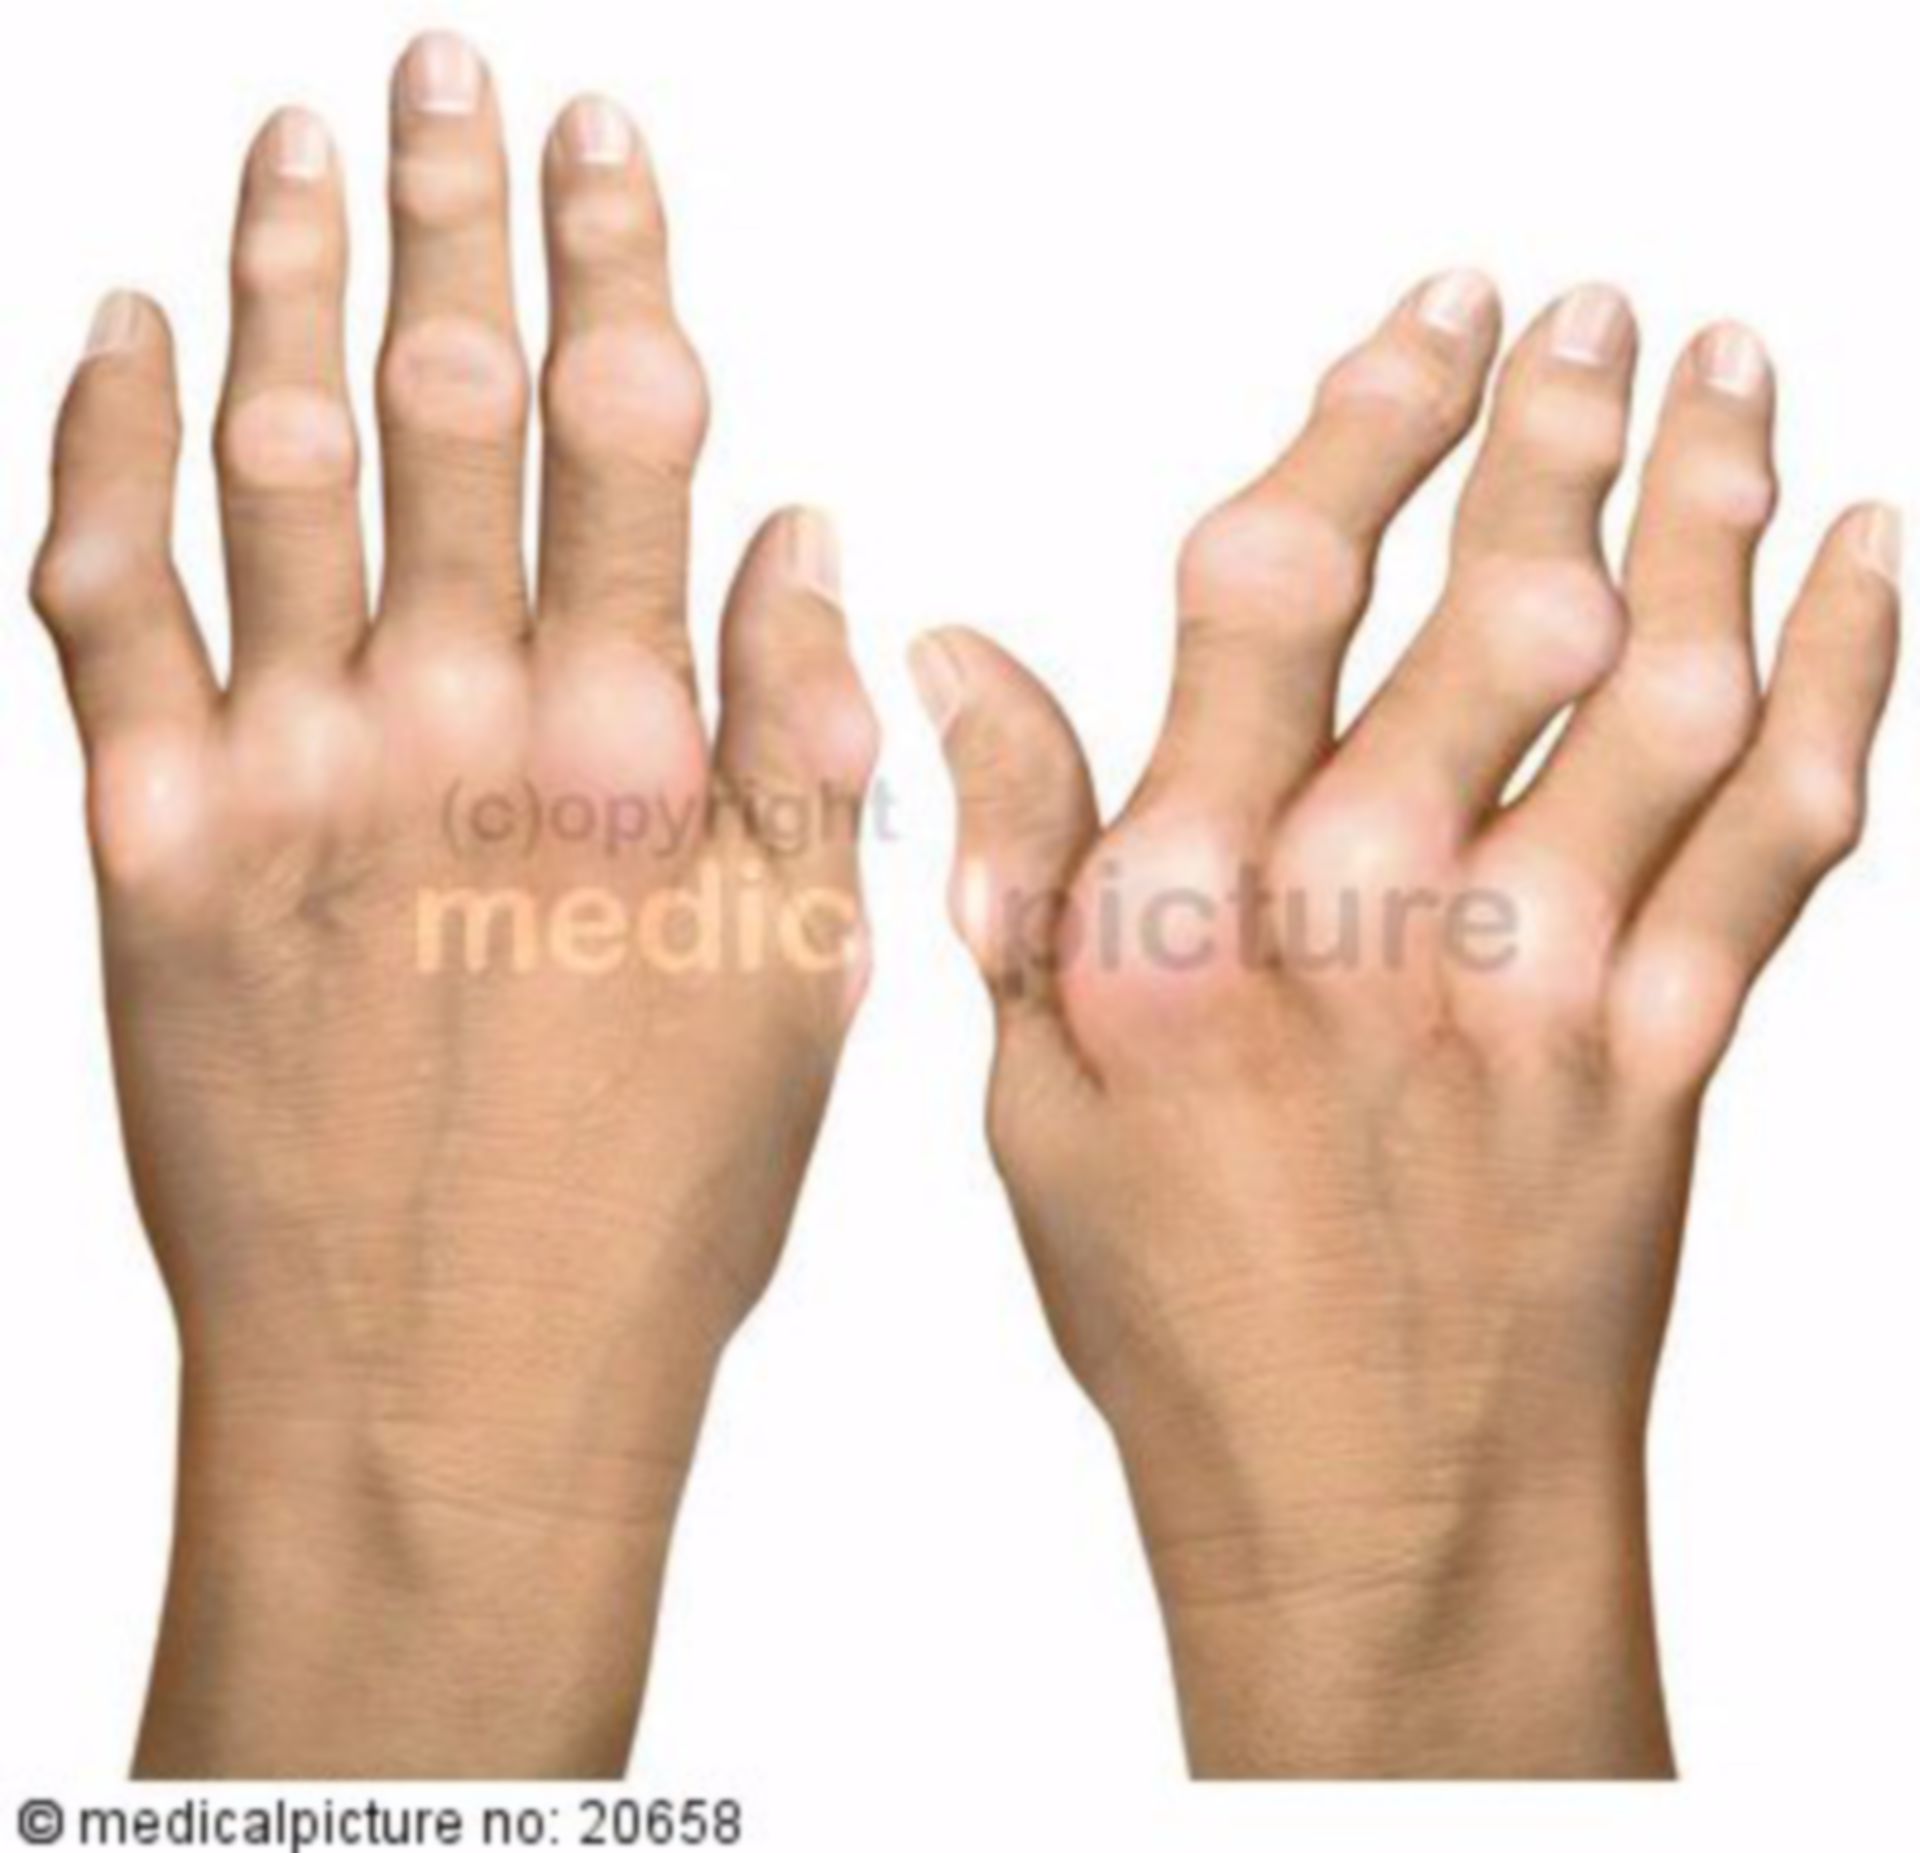 Deformierte Hände infolge rheumatoider Arthritis